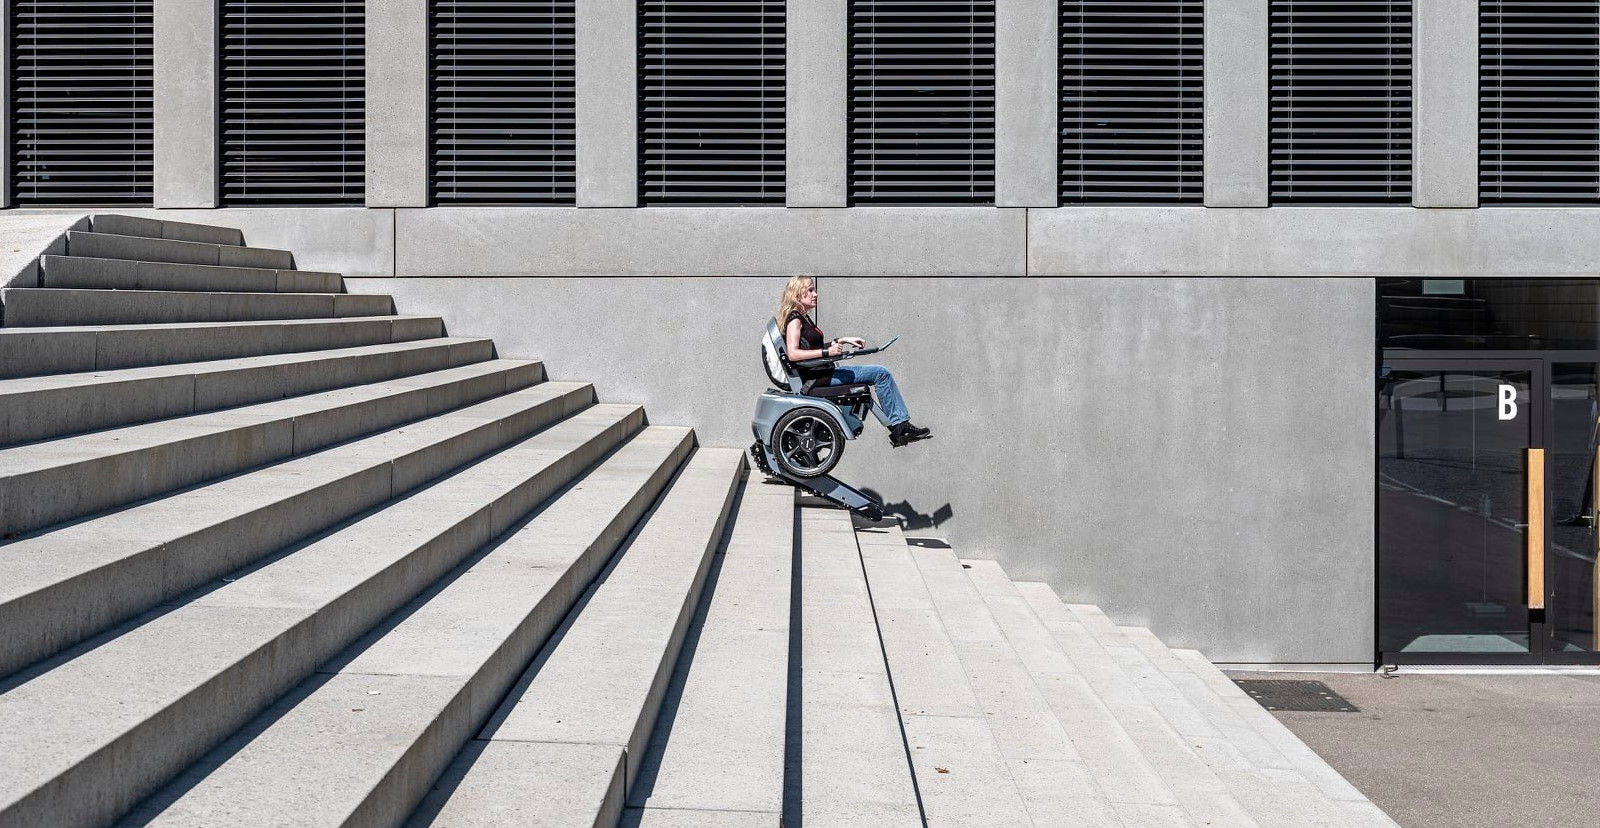 Ce fauteuil à deux roues est doté de chenilles pour grimper les escaliers. © Scewo